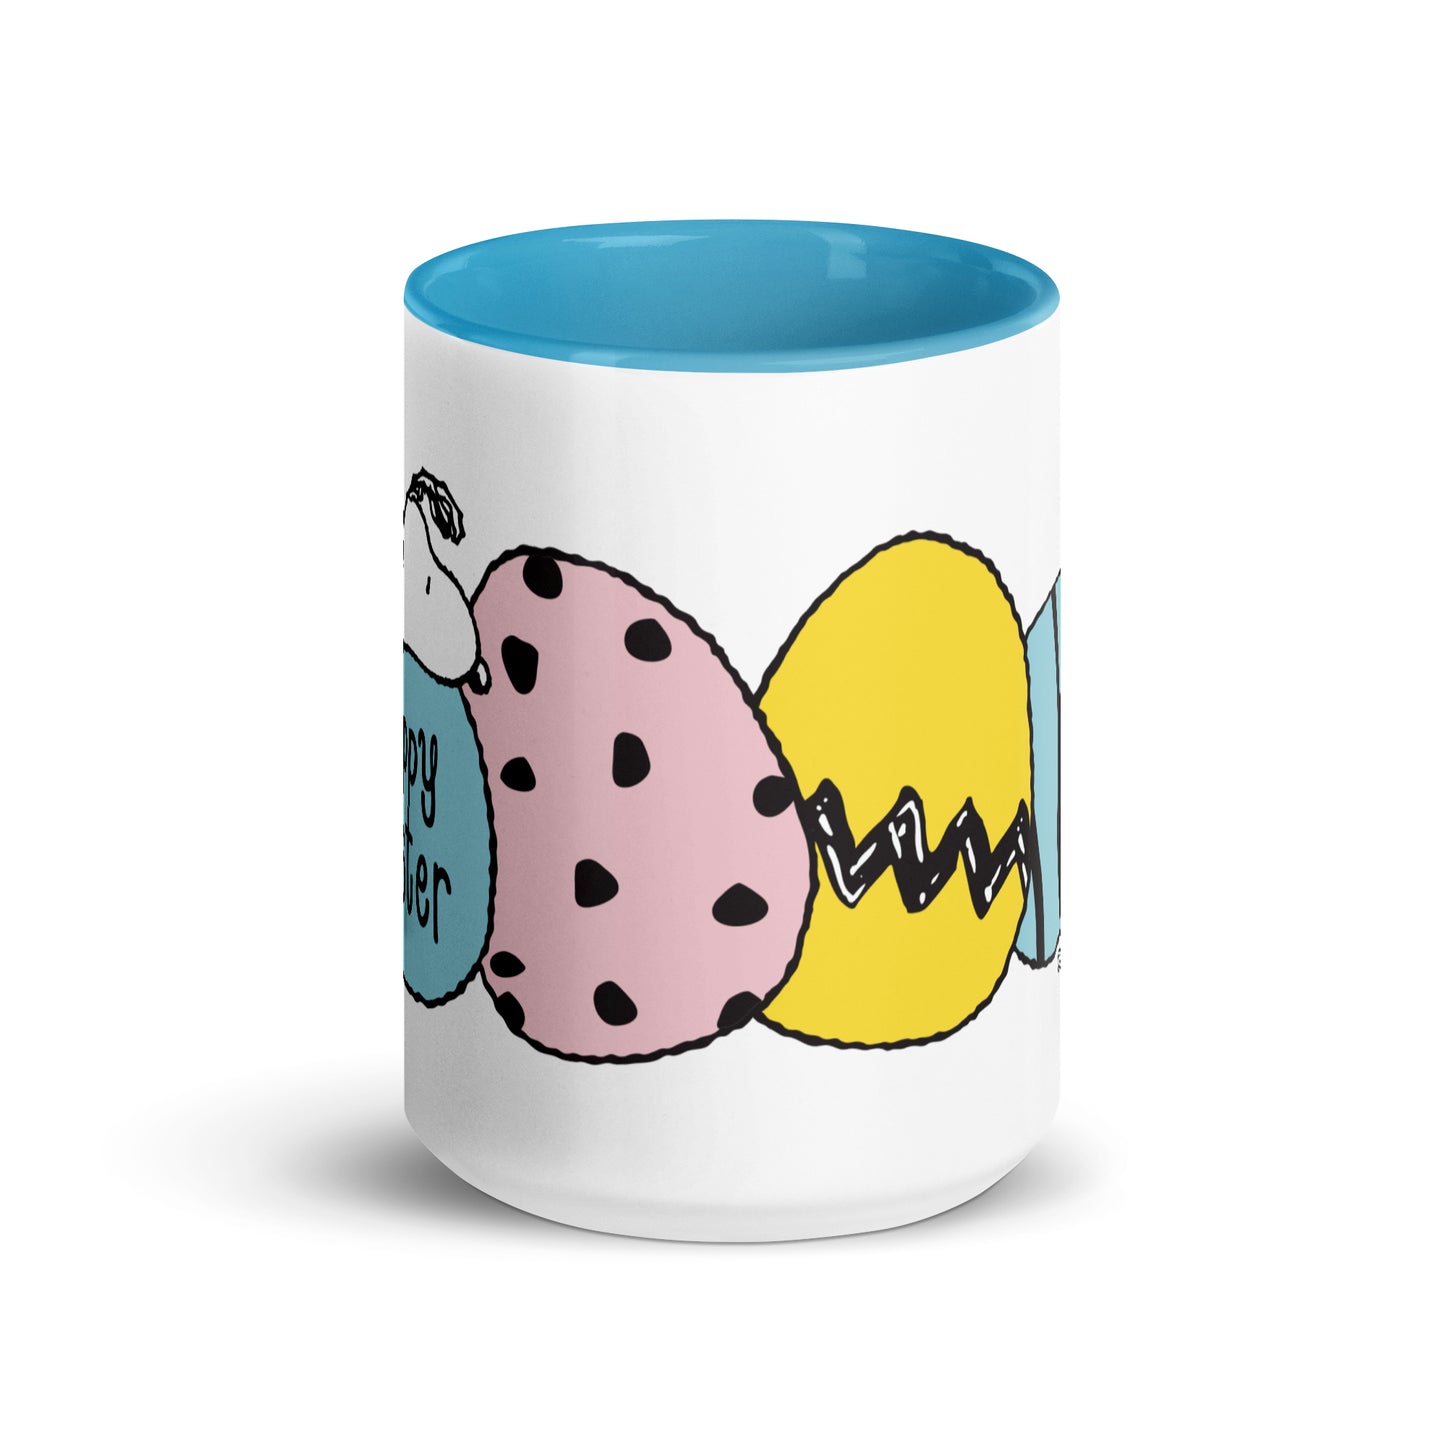 Peanuts Snoopy Easter Eggs Mug